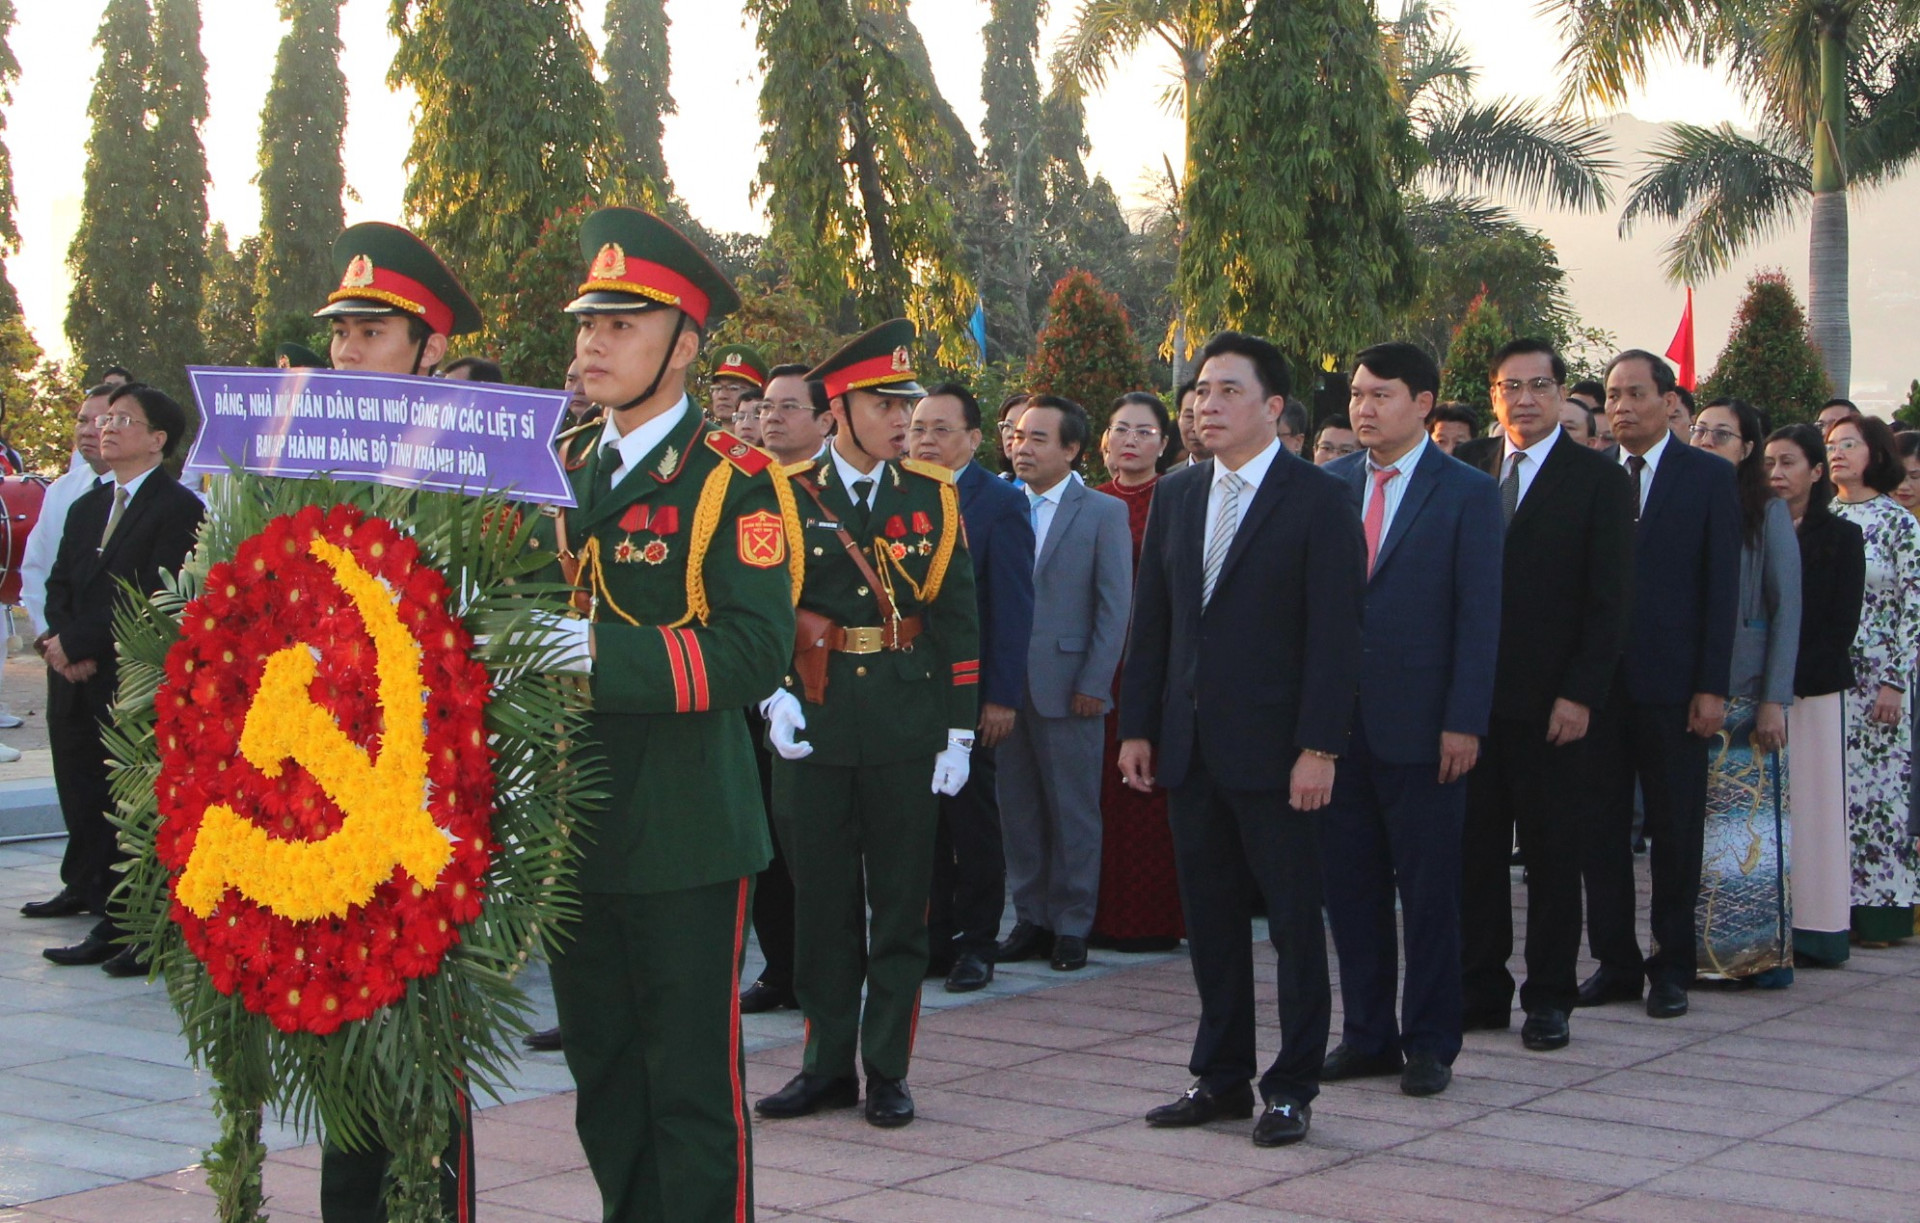 Đoàn đại biểu của Ban Chấp hành Đảng bộ tỉnh do đồng chí Nguyễn Khắc Toàn dẫn đầu vào viếng.